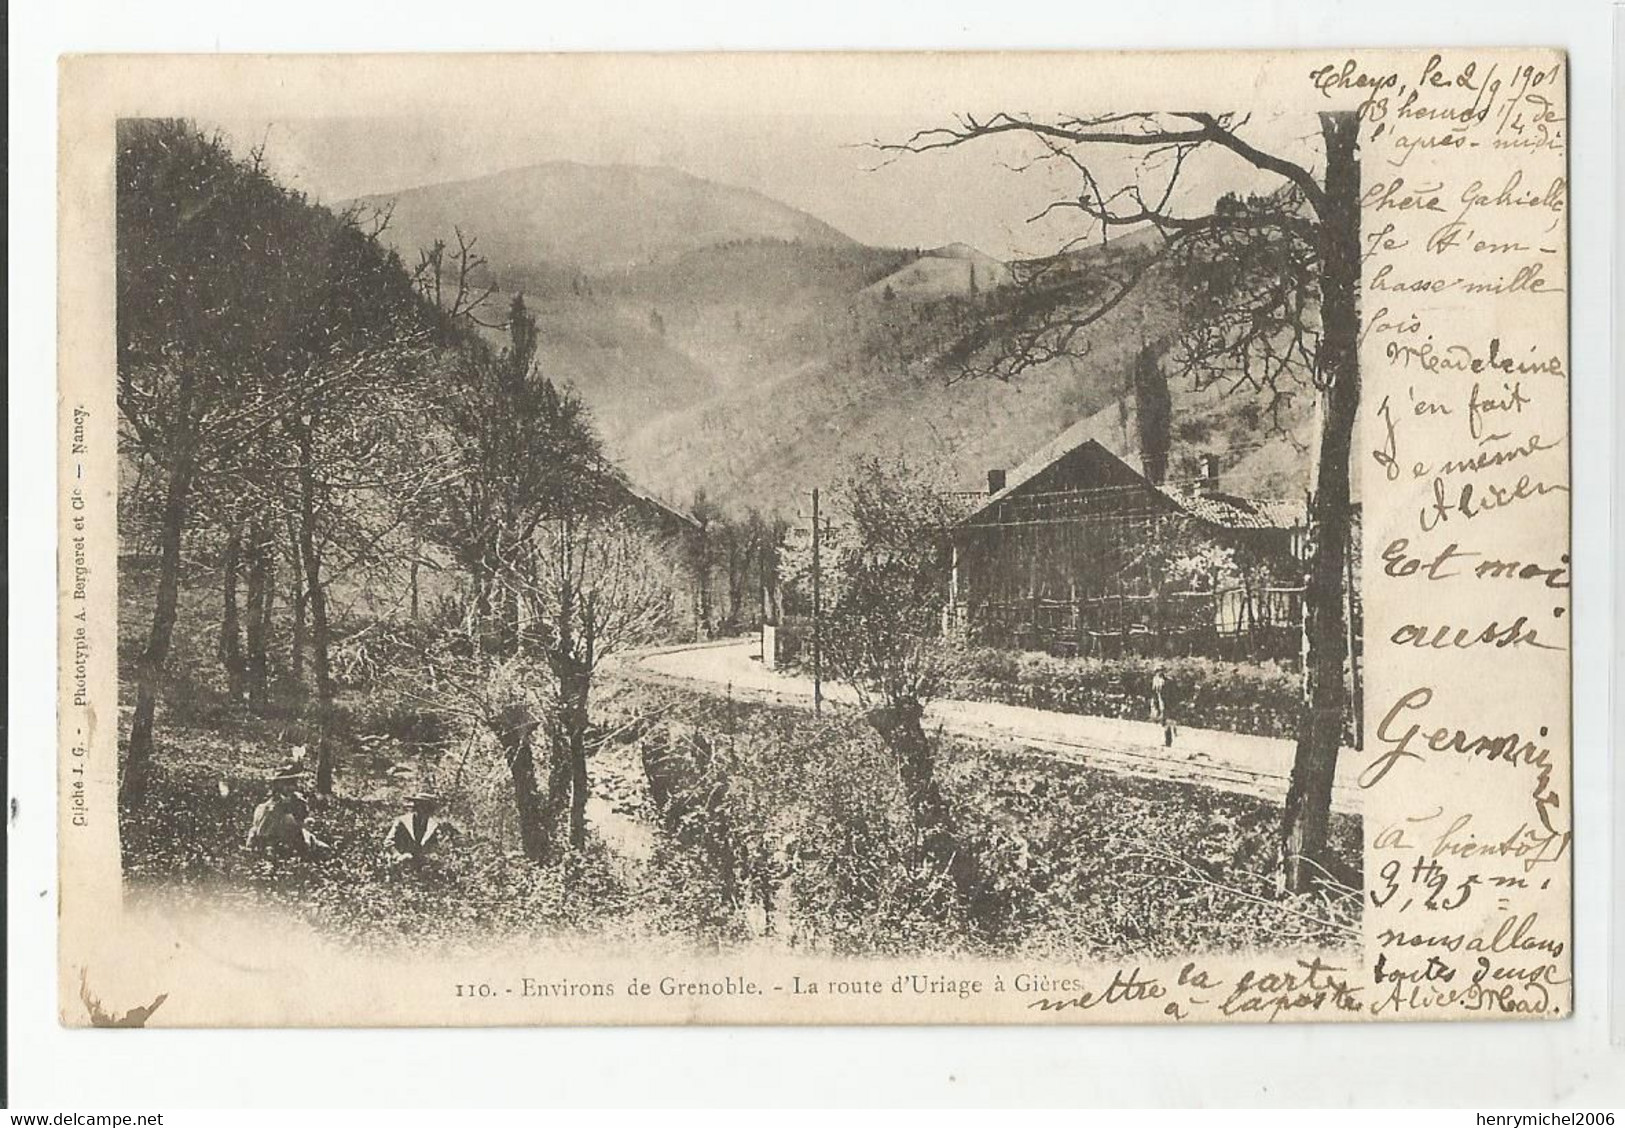 38 Isère La Route De St Martin D'uriage A Gières Env. De Grenoble 1901 - Grenoble